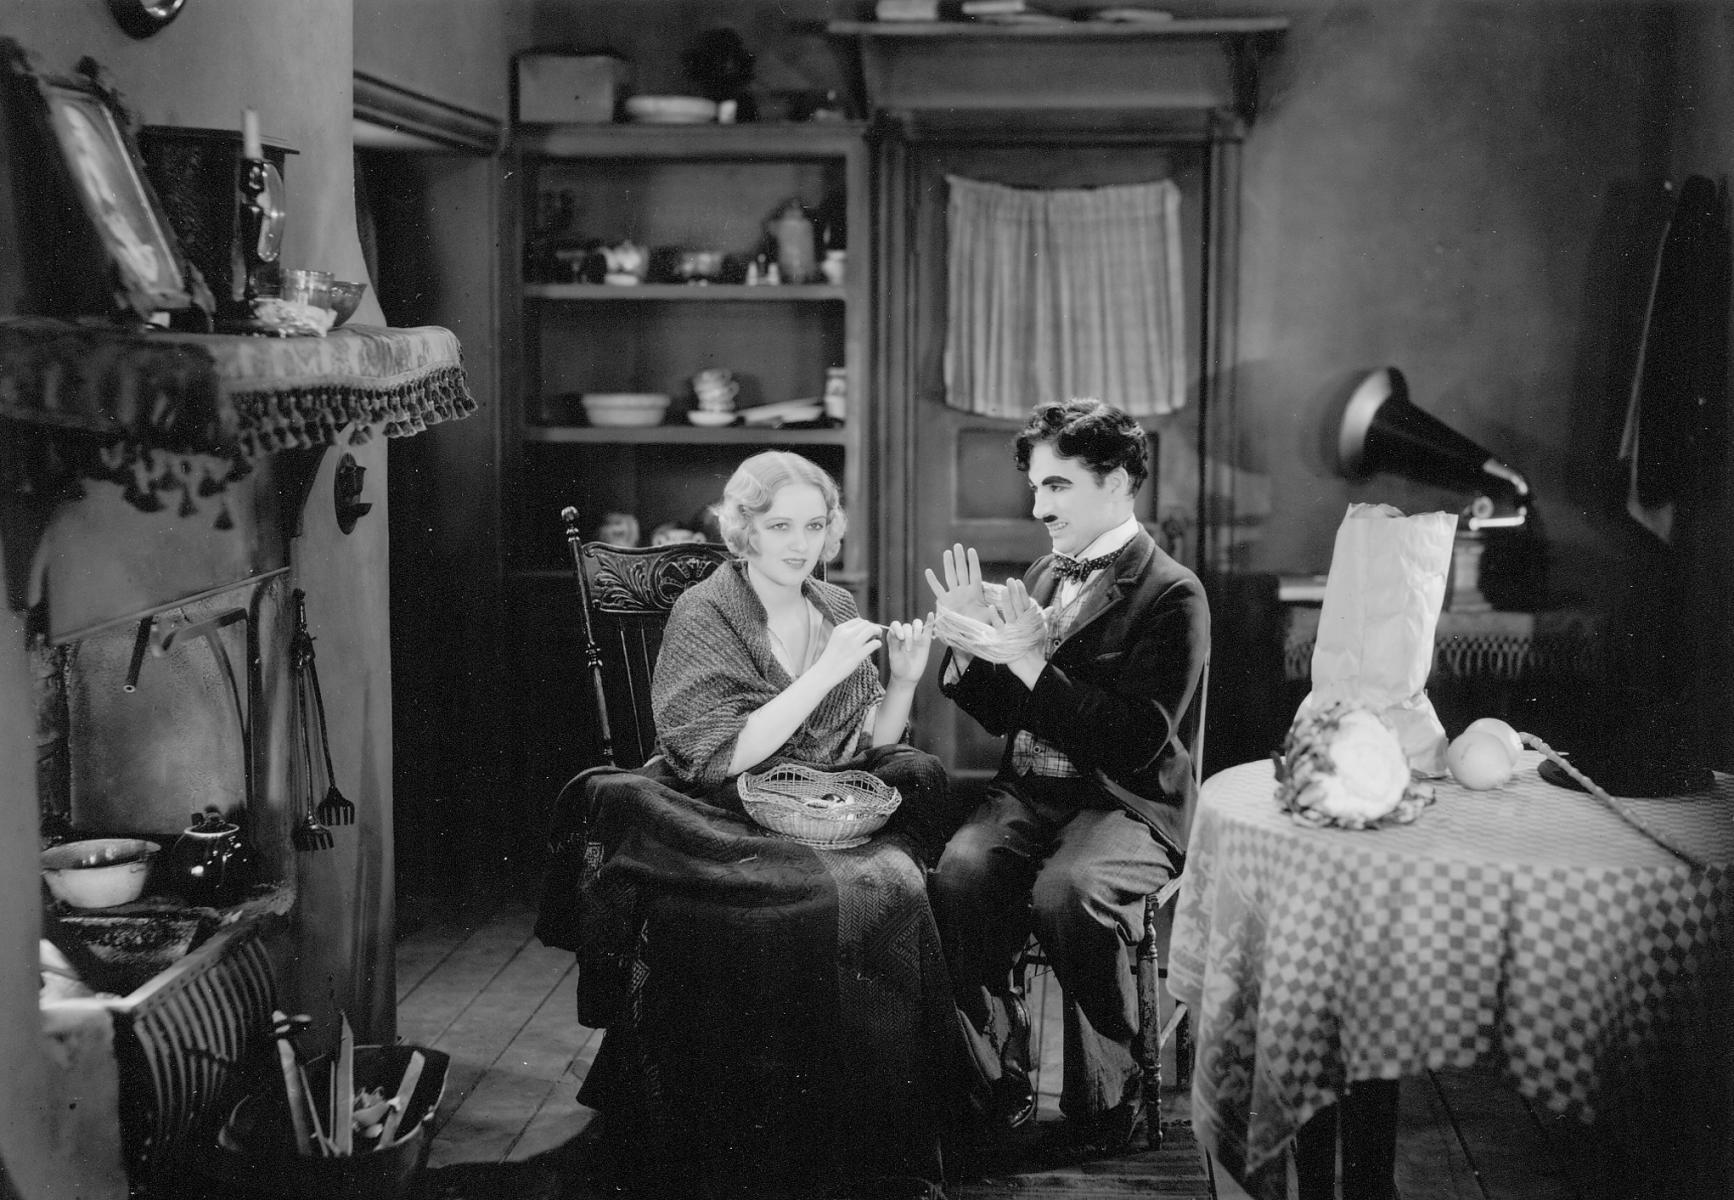 Luces de la ciudad (Charles Chaplin, 1931)